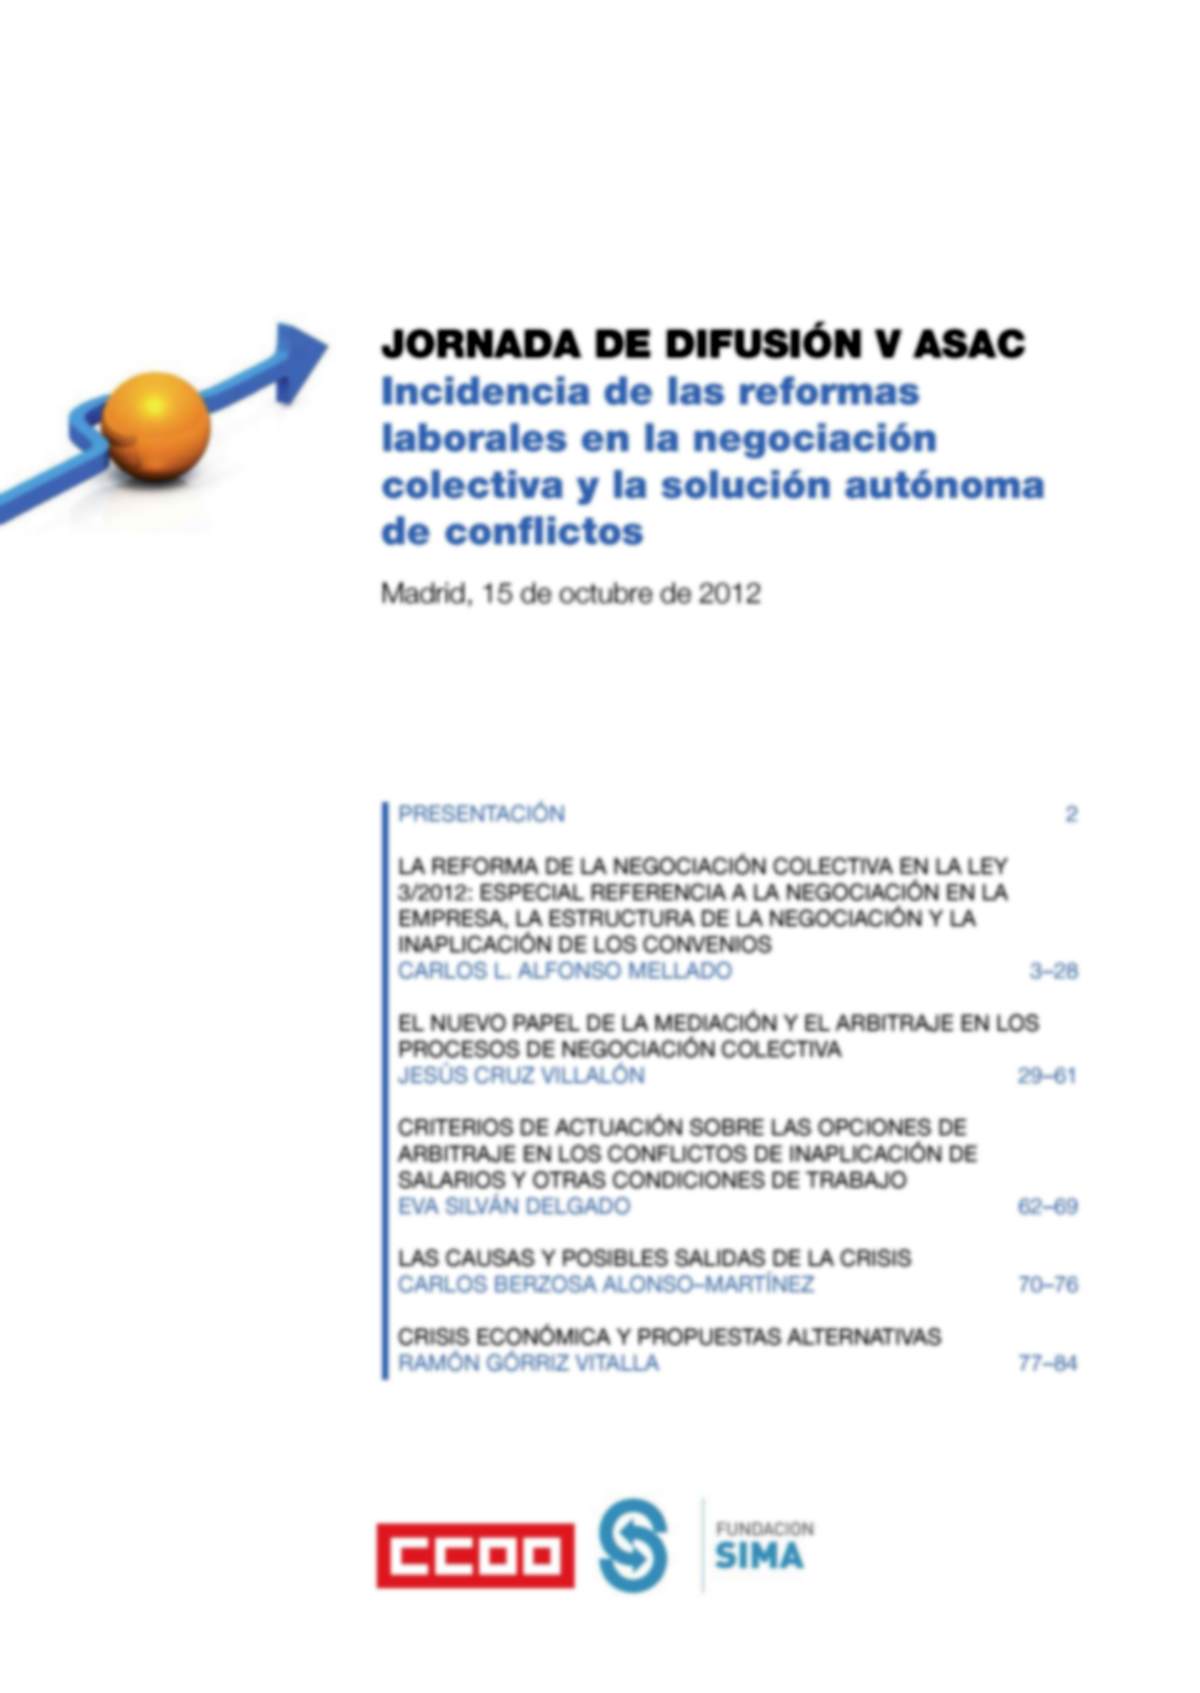 JORNADA DE DIFUSIN V ASAC " Incidencia de las reformas laborales en la negociacin colectiva y la solucin autnoma de conflictos"